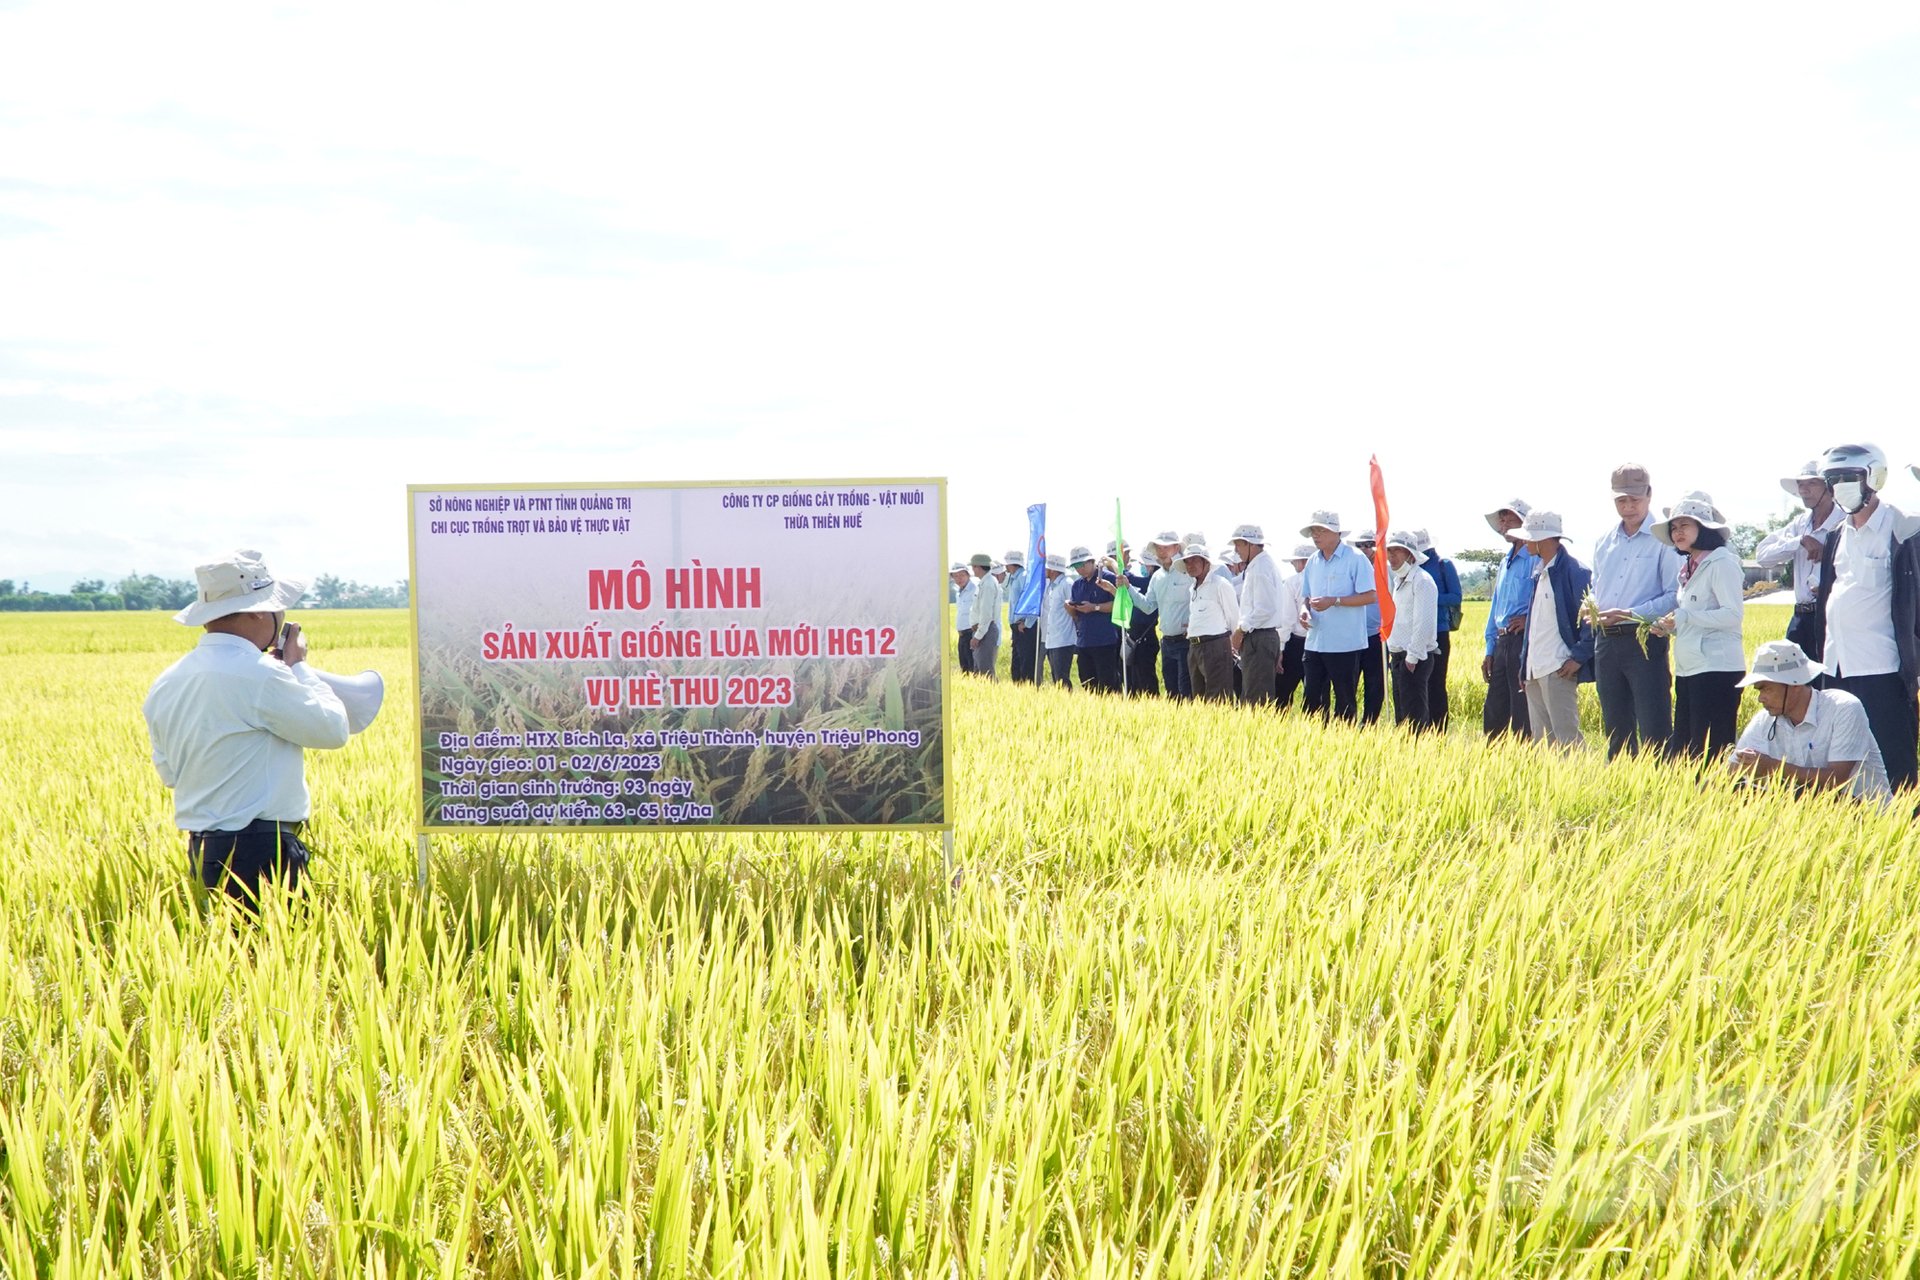 Qua sản xuất thử nghiệm nhiều năm liền, giống lúa HG12 đã tạo được niềm tin của nông dân Quảng Trị. Ảnh: Võ Dũng.